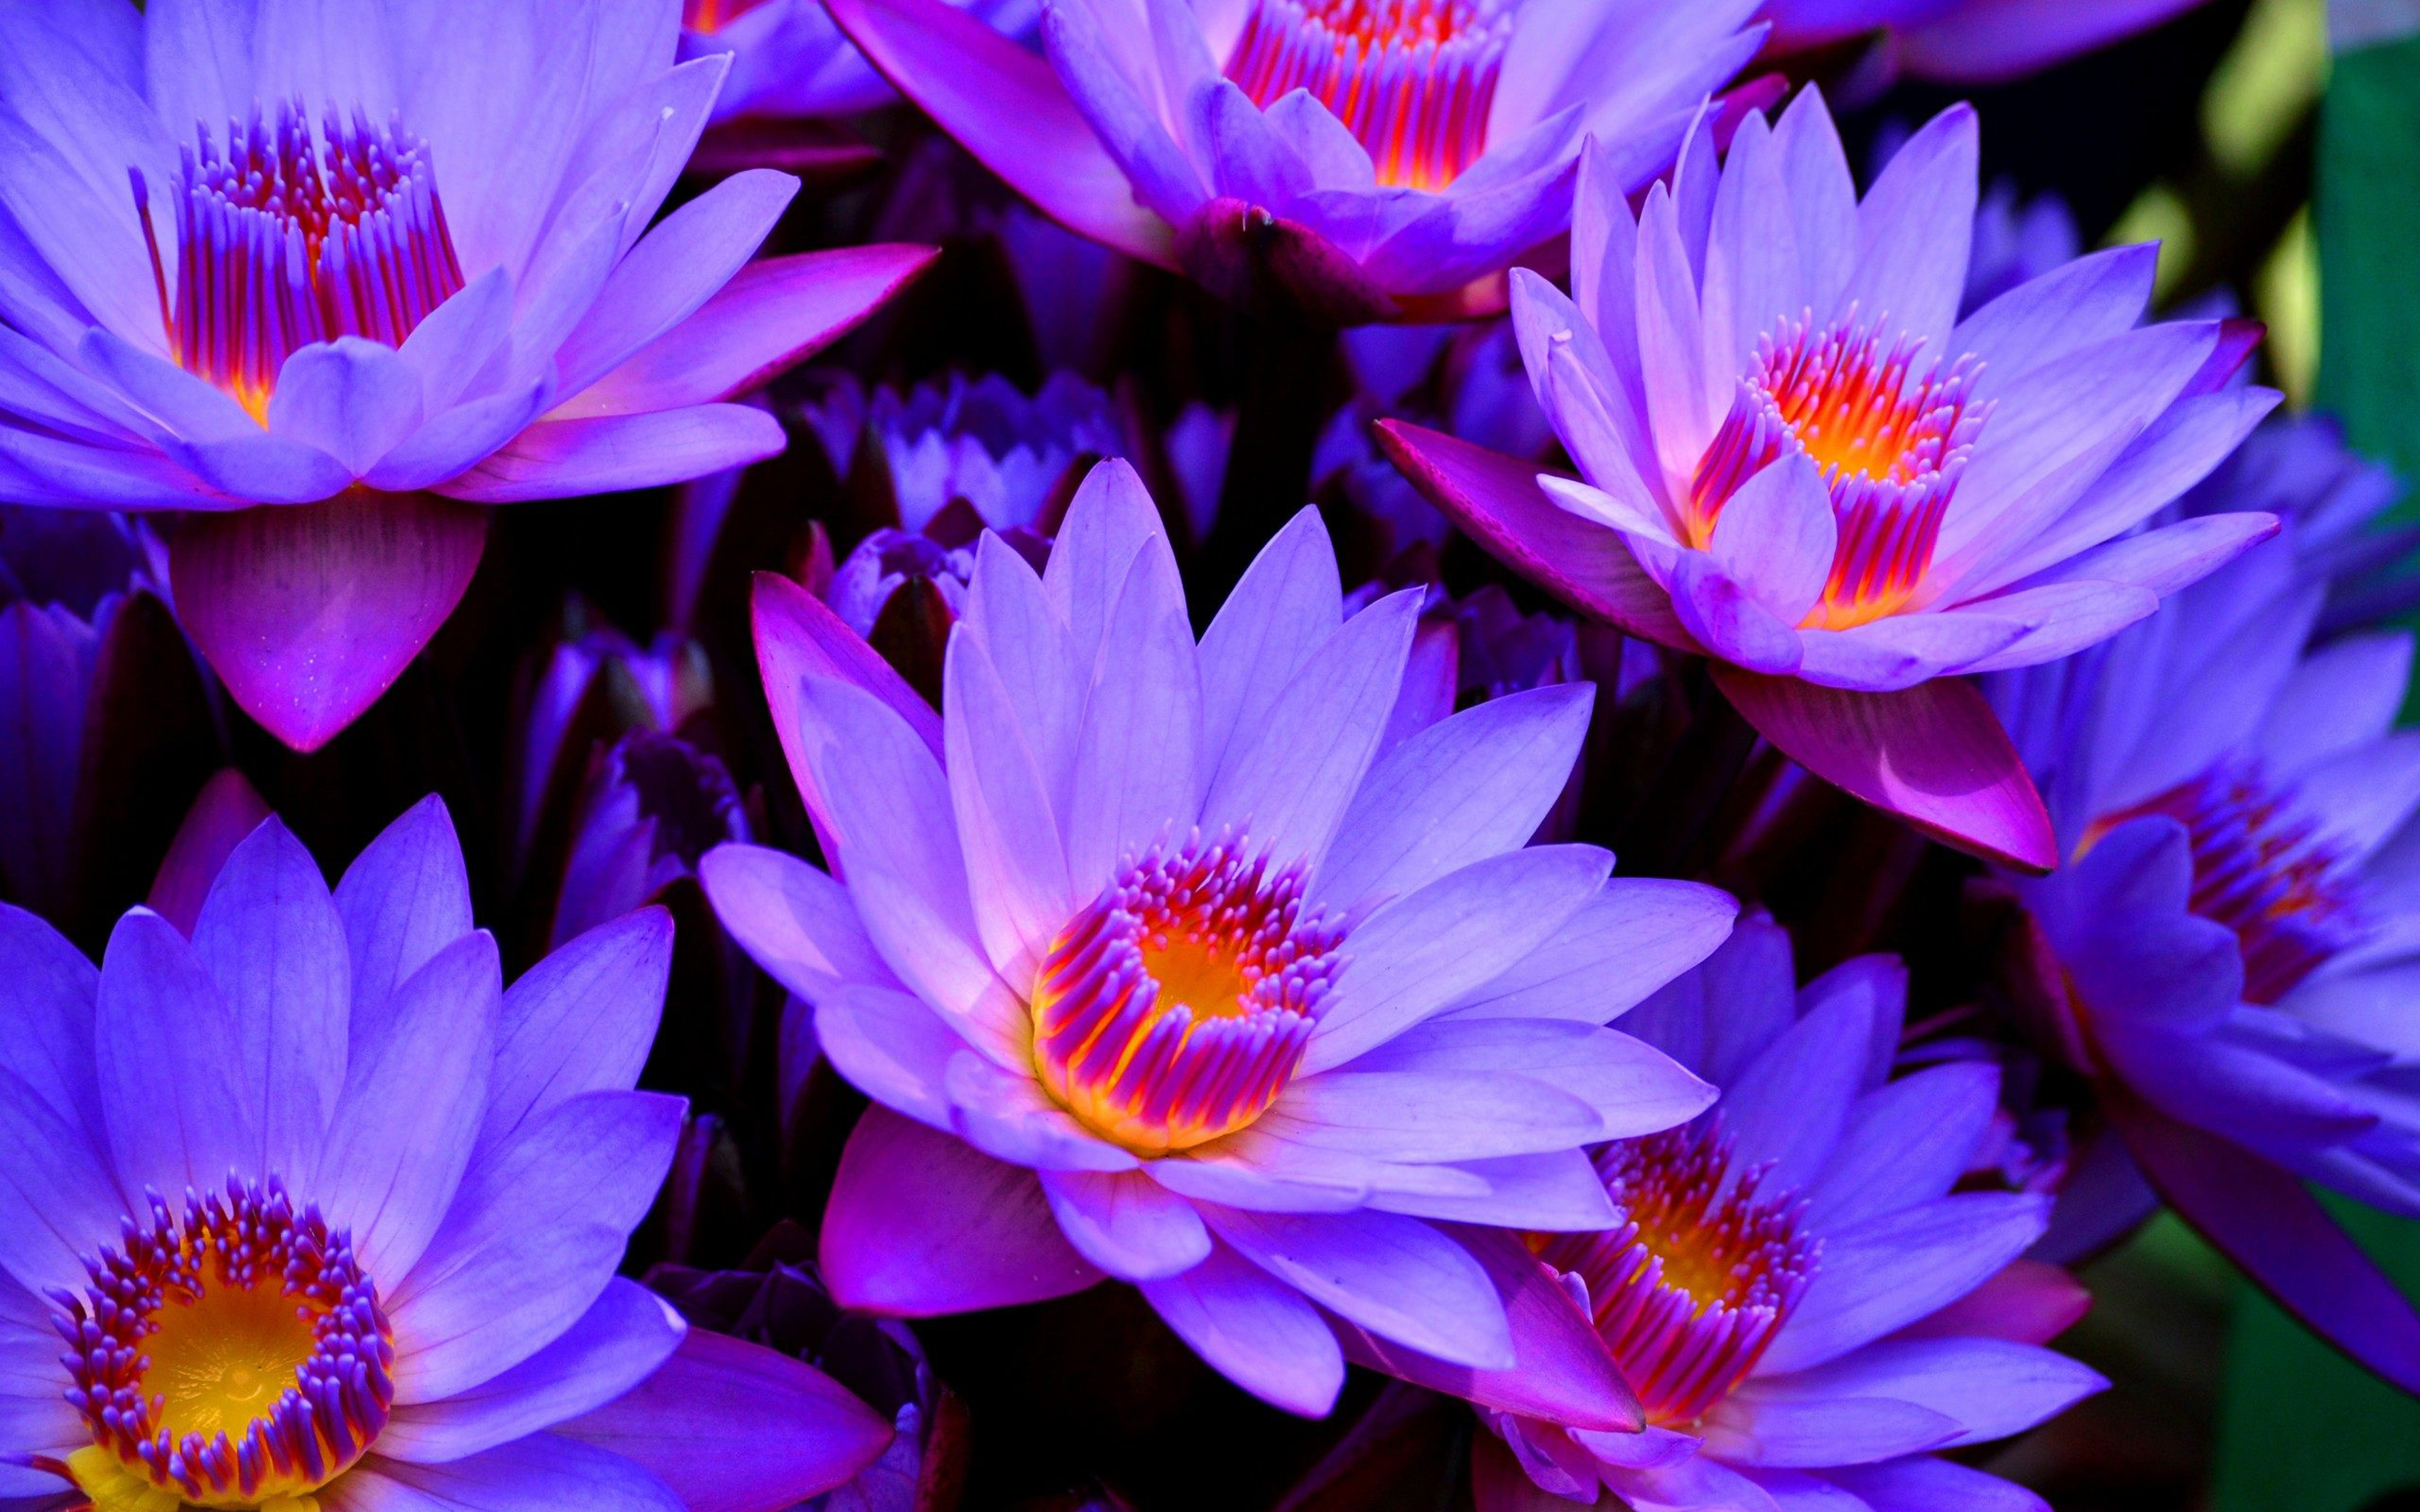 Flowering plants Blue lotus flower Full Hd Wallpaper For Desktop  backgrounds 3840x2400 : 